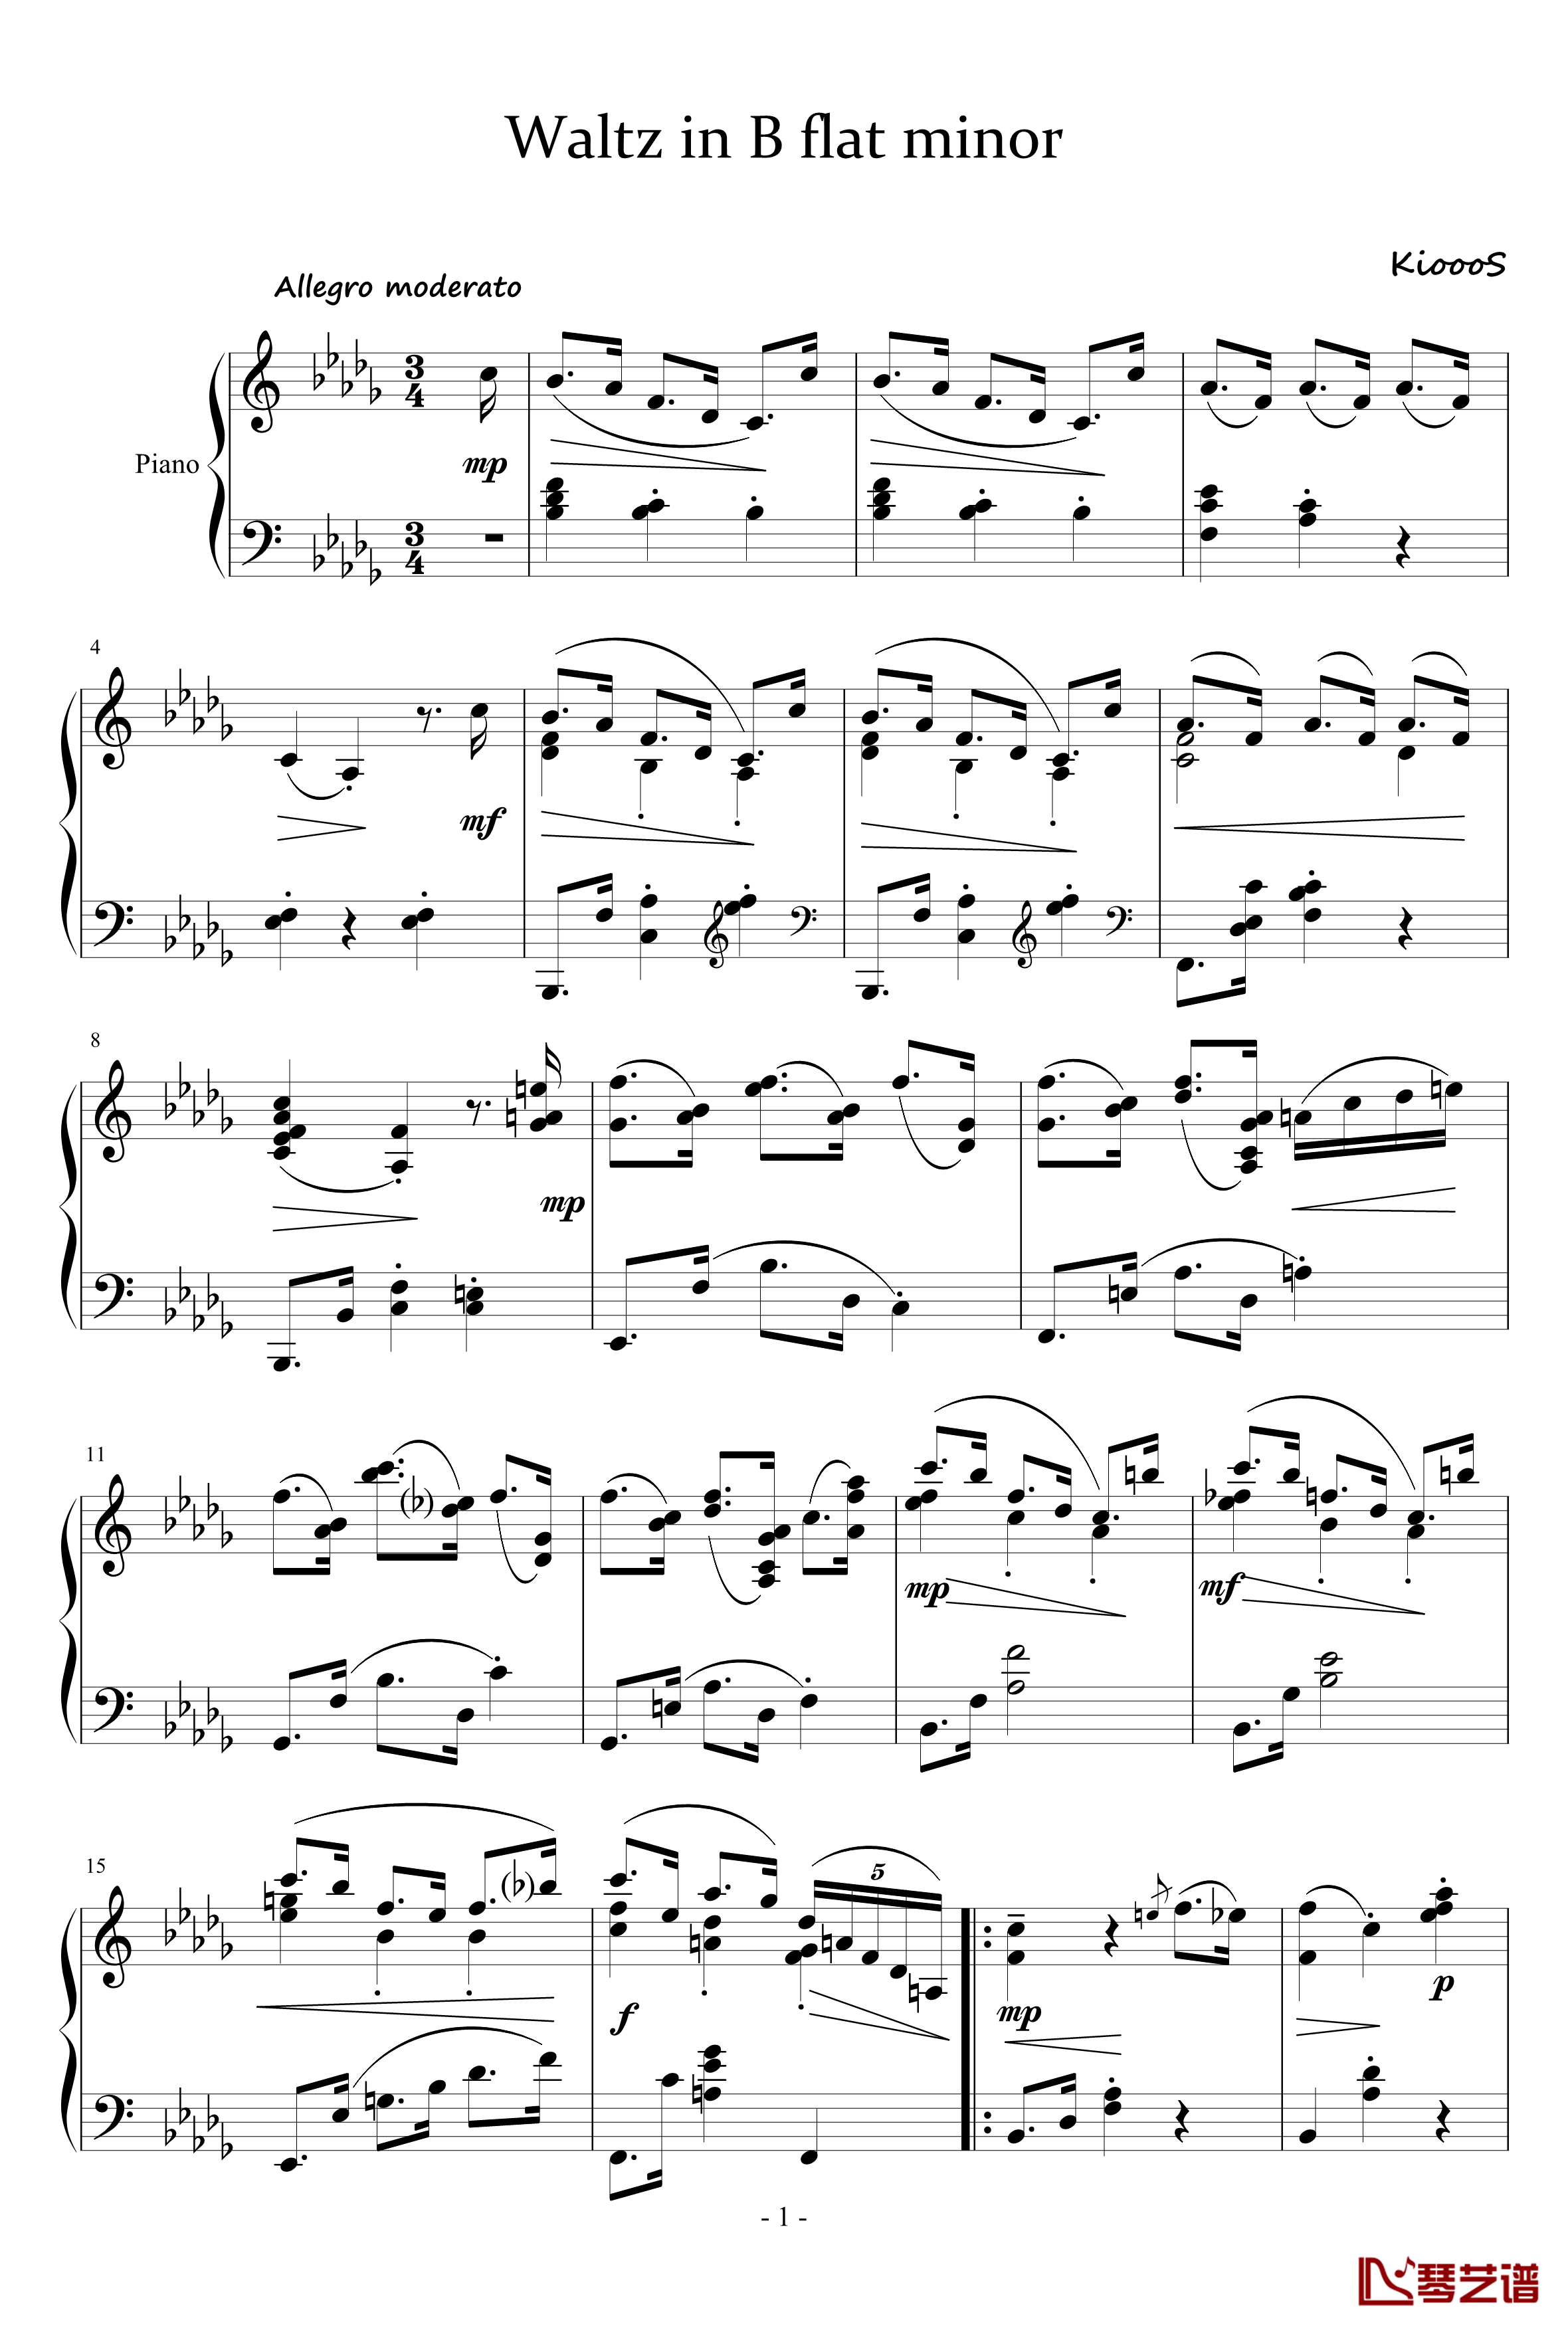 Waltz in B flat minor钢琴谱-KioooS